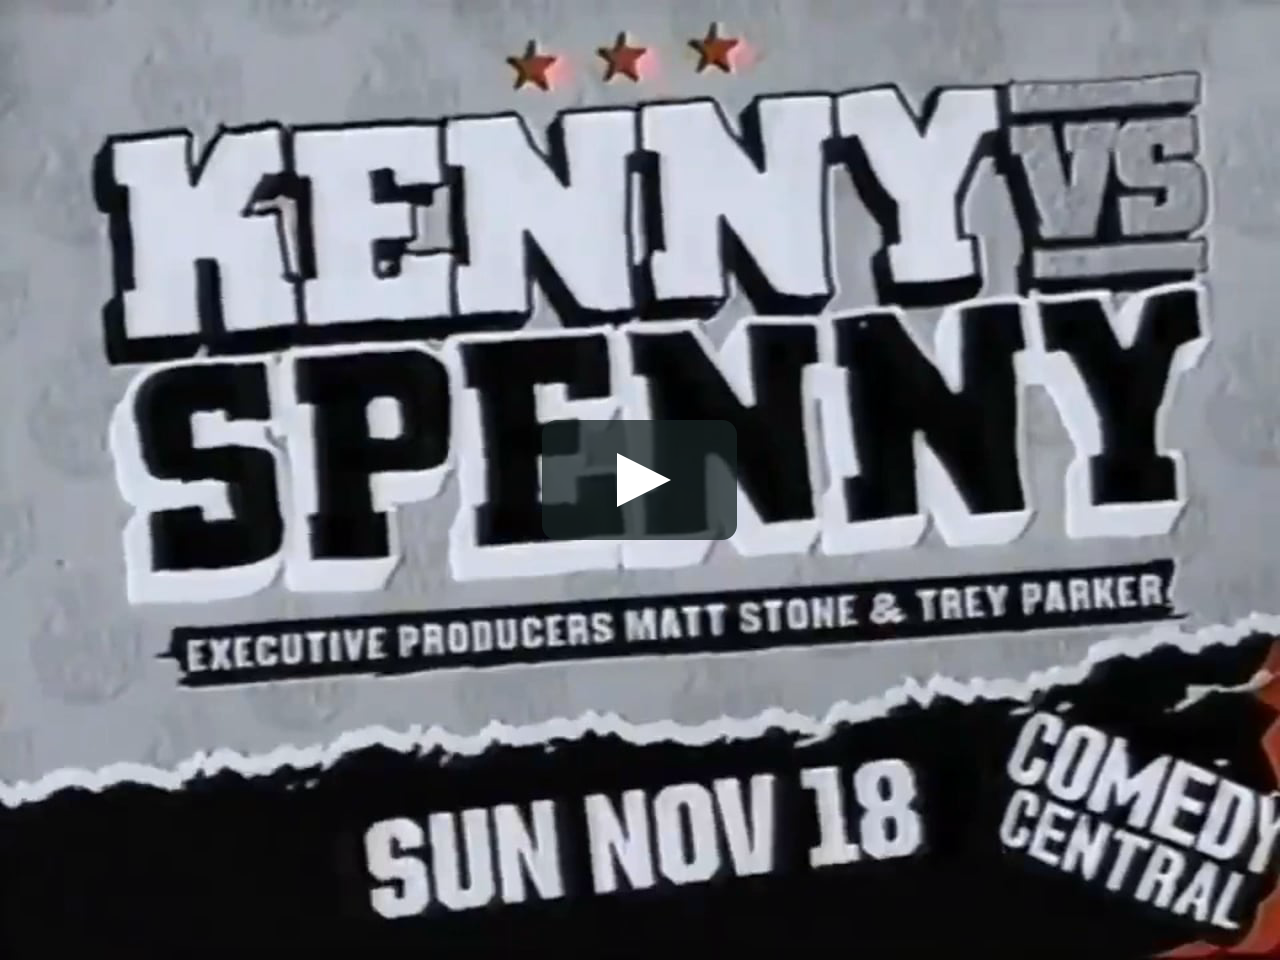 Kenny vs spenny vimeo